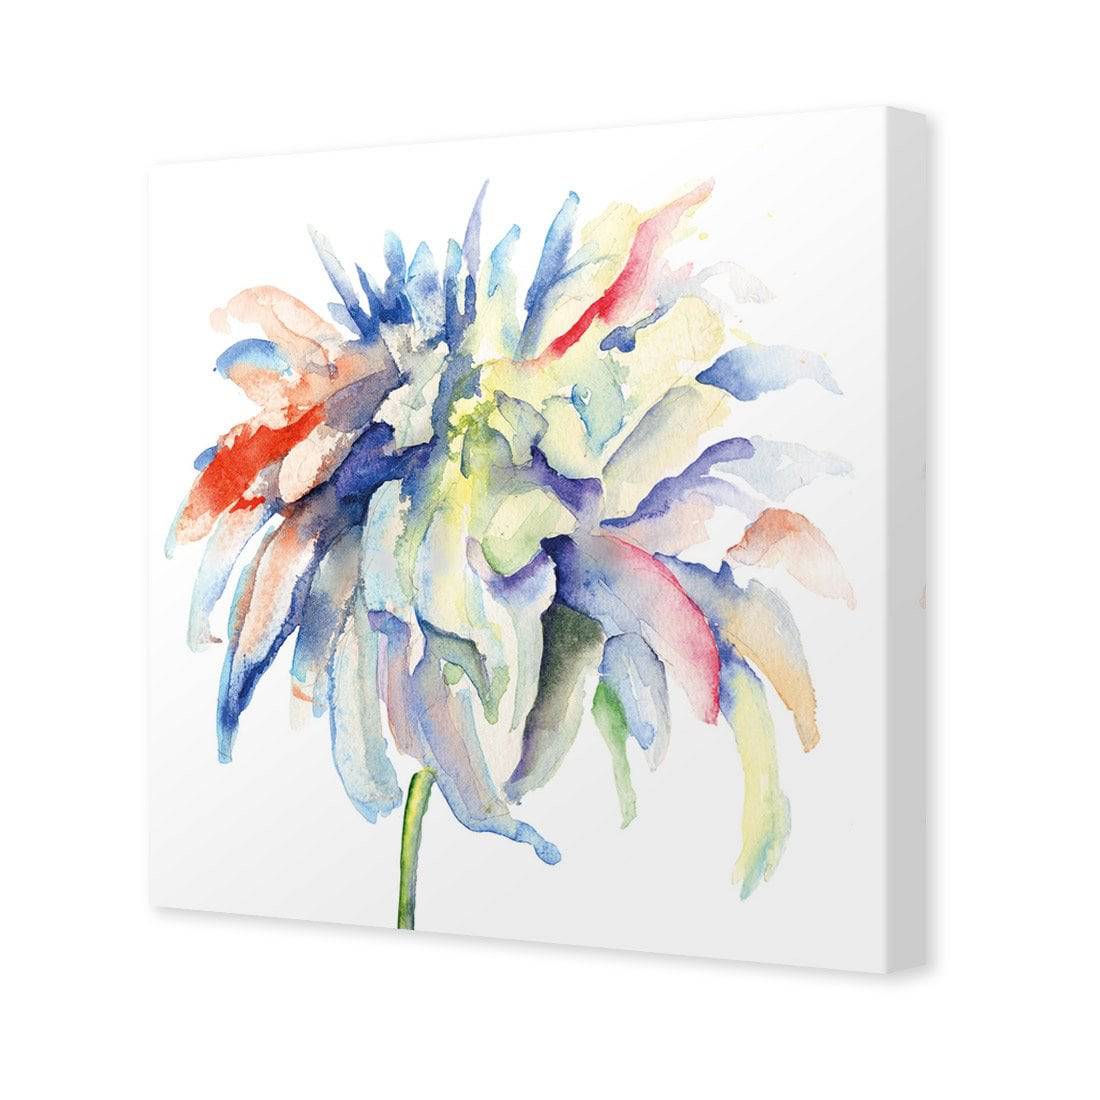 Fairy Floss Canvas Art-Canvas-Wall Art Designs-30x30cm-Canvas - No Frame-Wall Art Designs